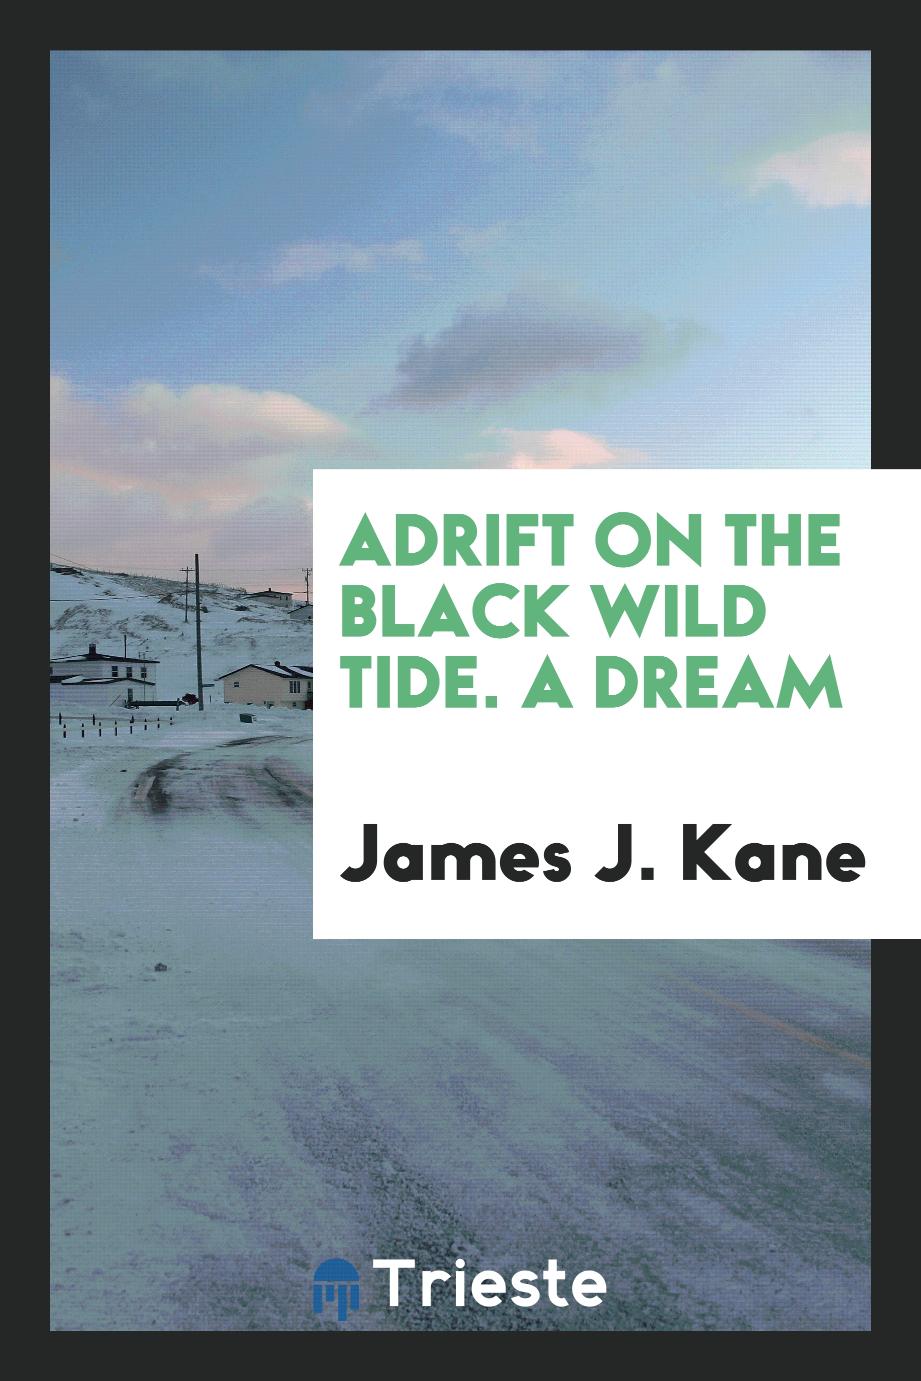 James J. Kane - Adrift on the black wild tide. A dream